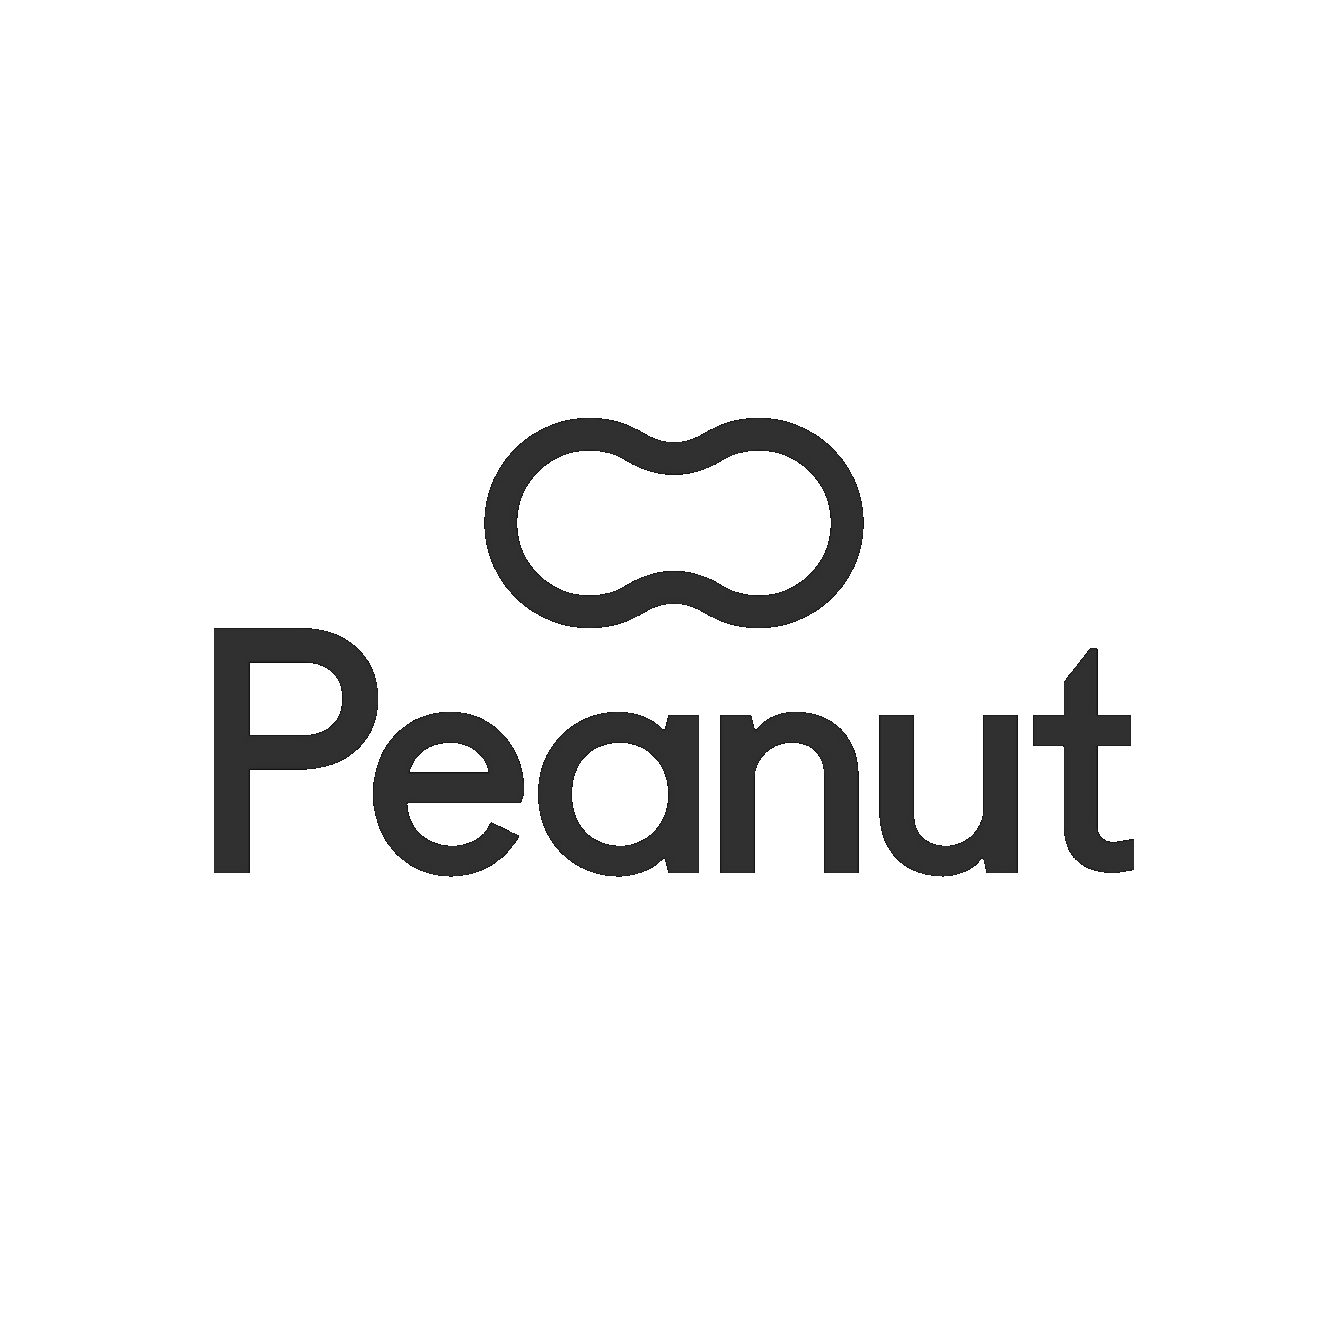 peanut-content-production.png